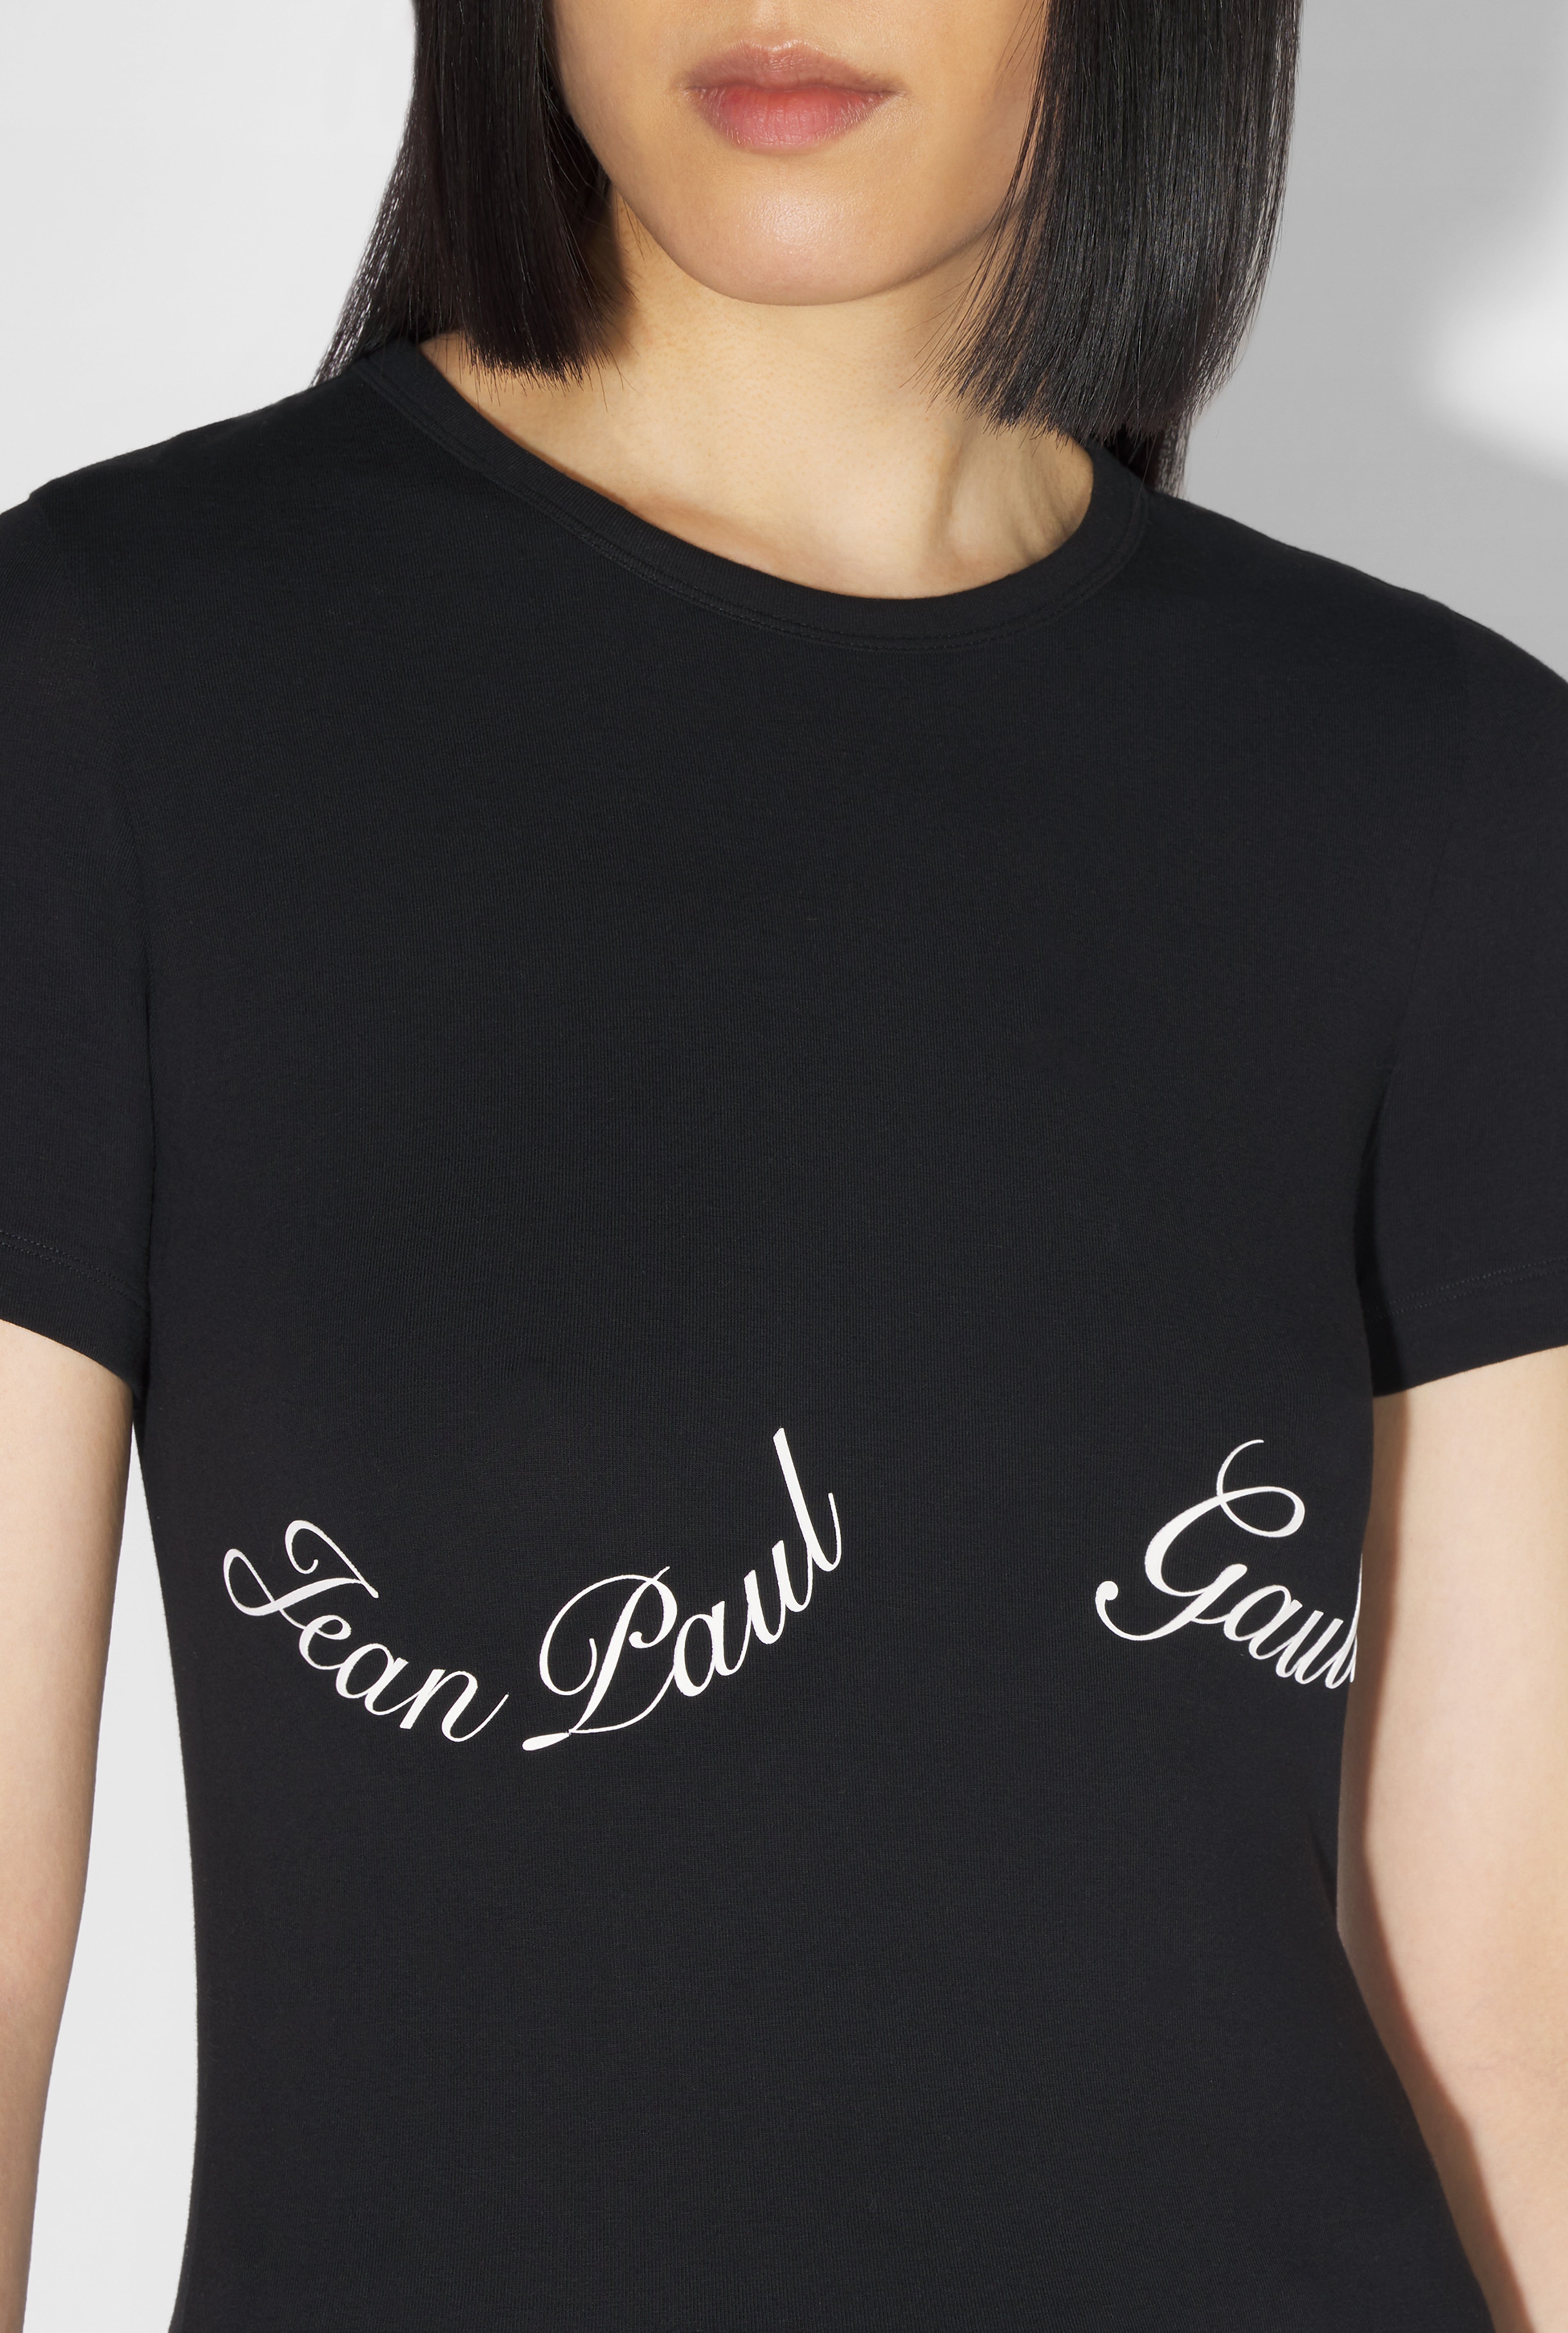 Le T-Shirt Jean Paul Gaultier Noir